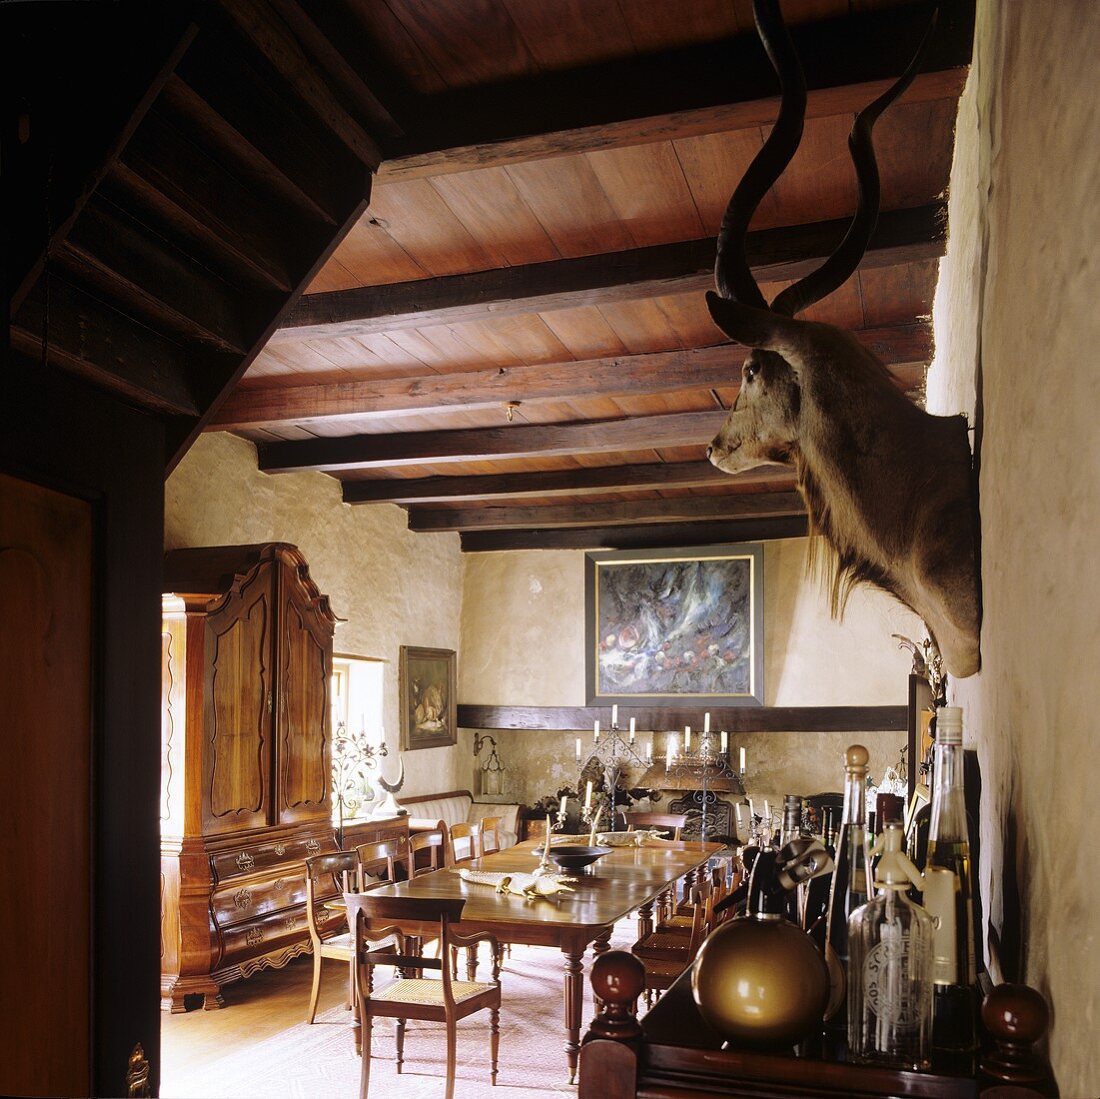 Esszimmer im südafrikanischen Landhaus - antike Esstafel unter rustikaler Holzdecke und ausgestopfter Tierkopf an Wand